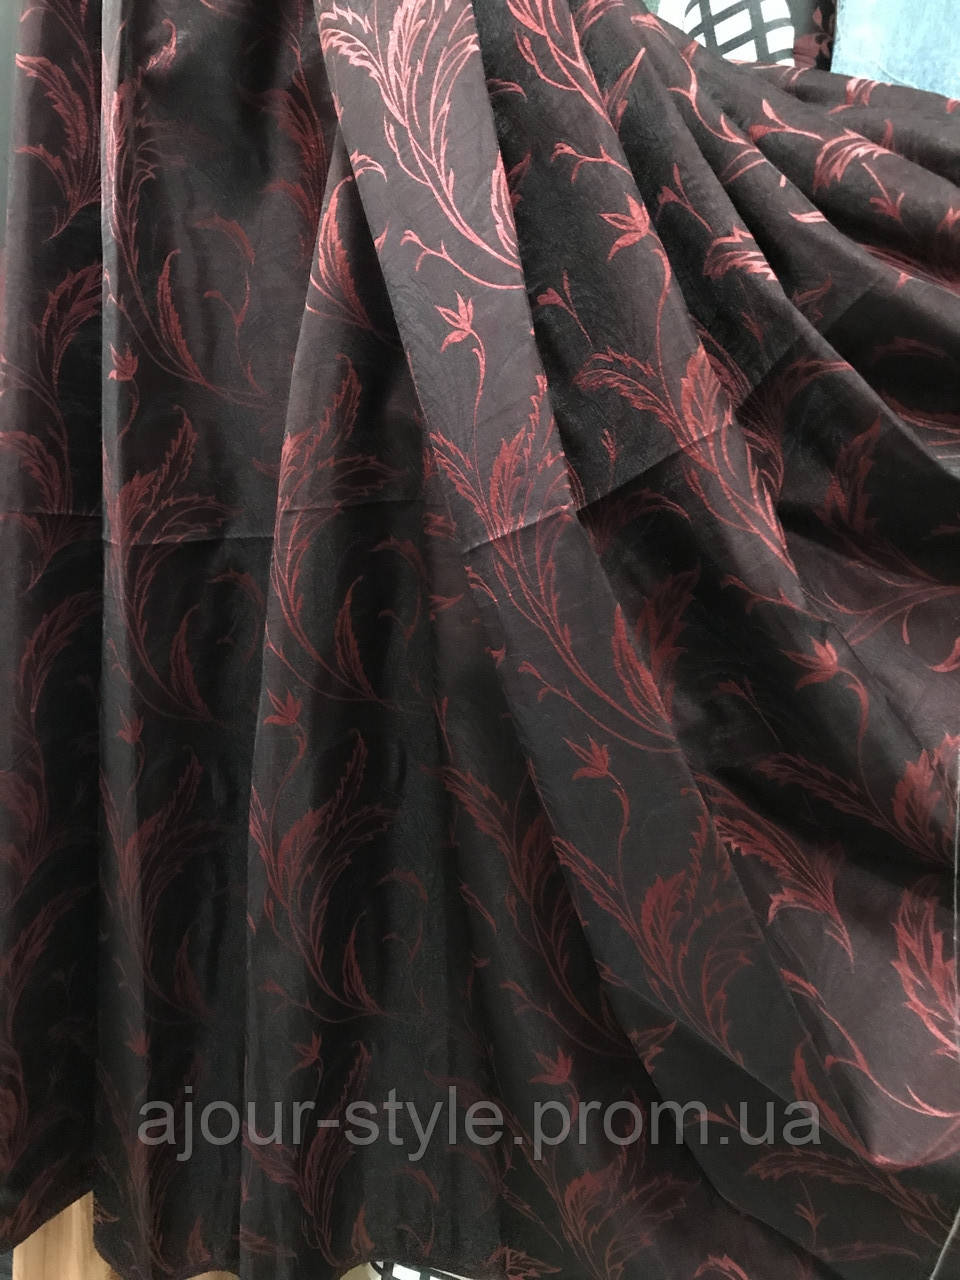 Штори, портьєри турецькі червоні з темно-коричневим жаккард з органзою